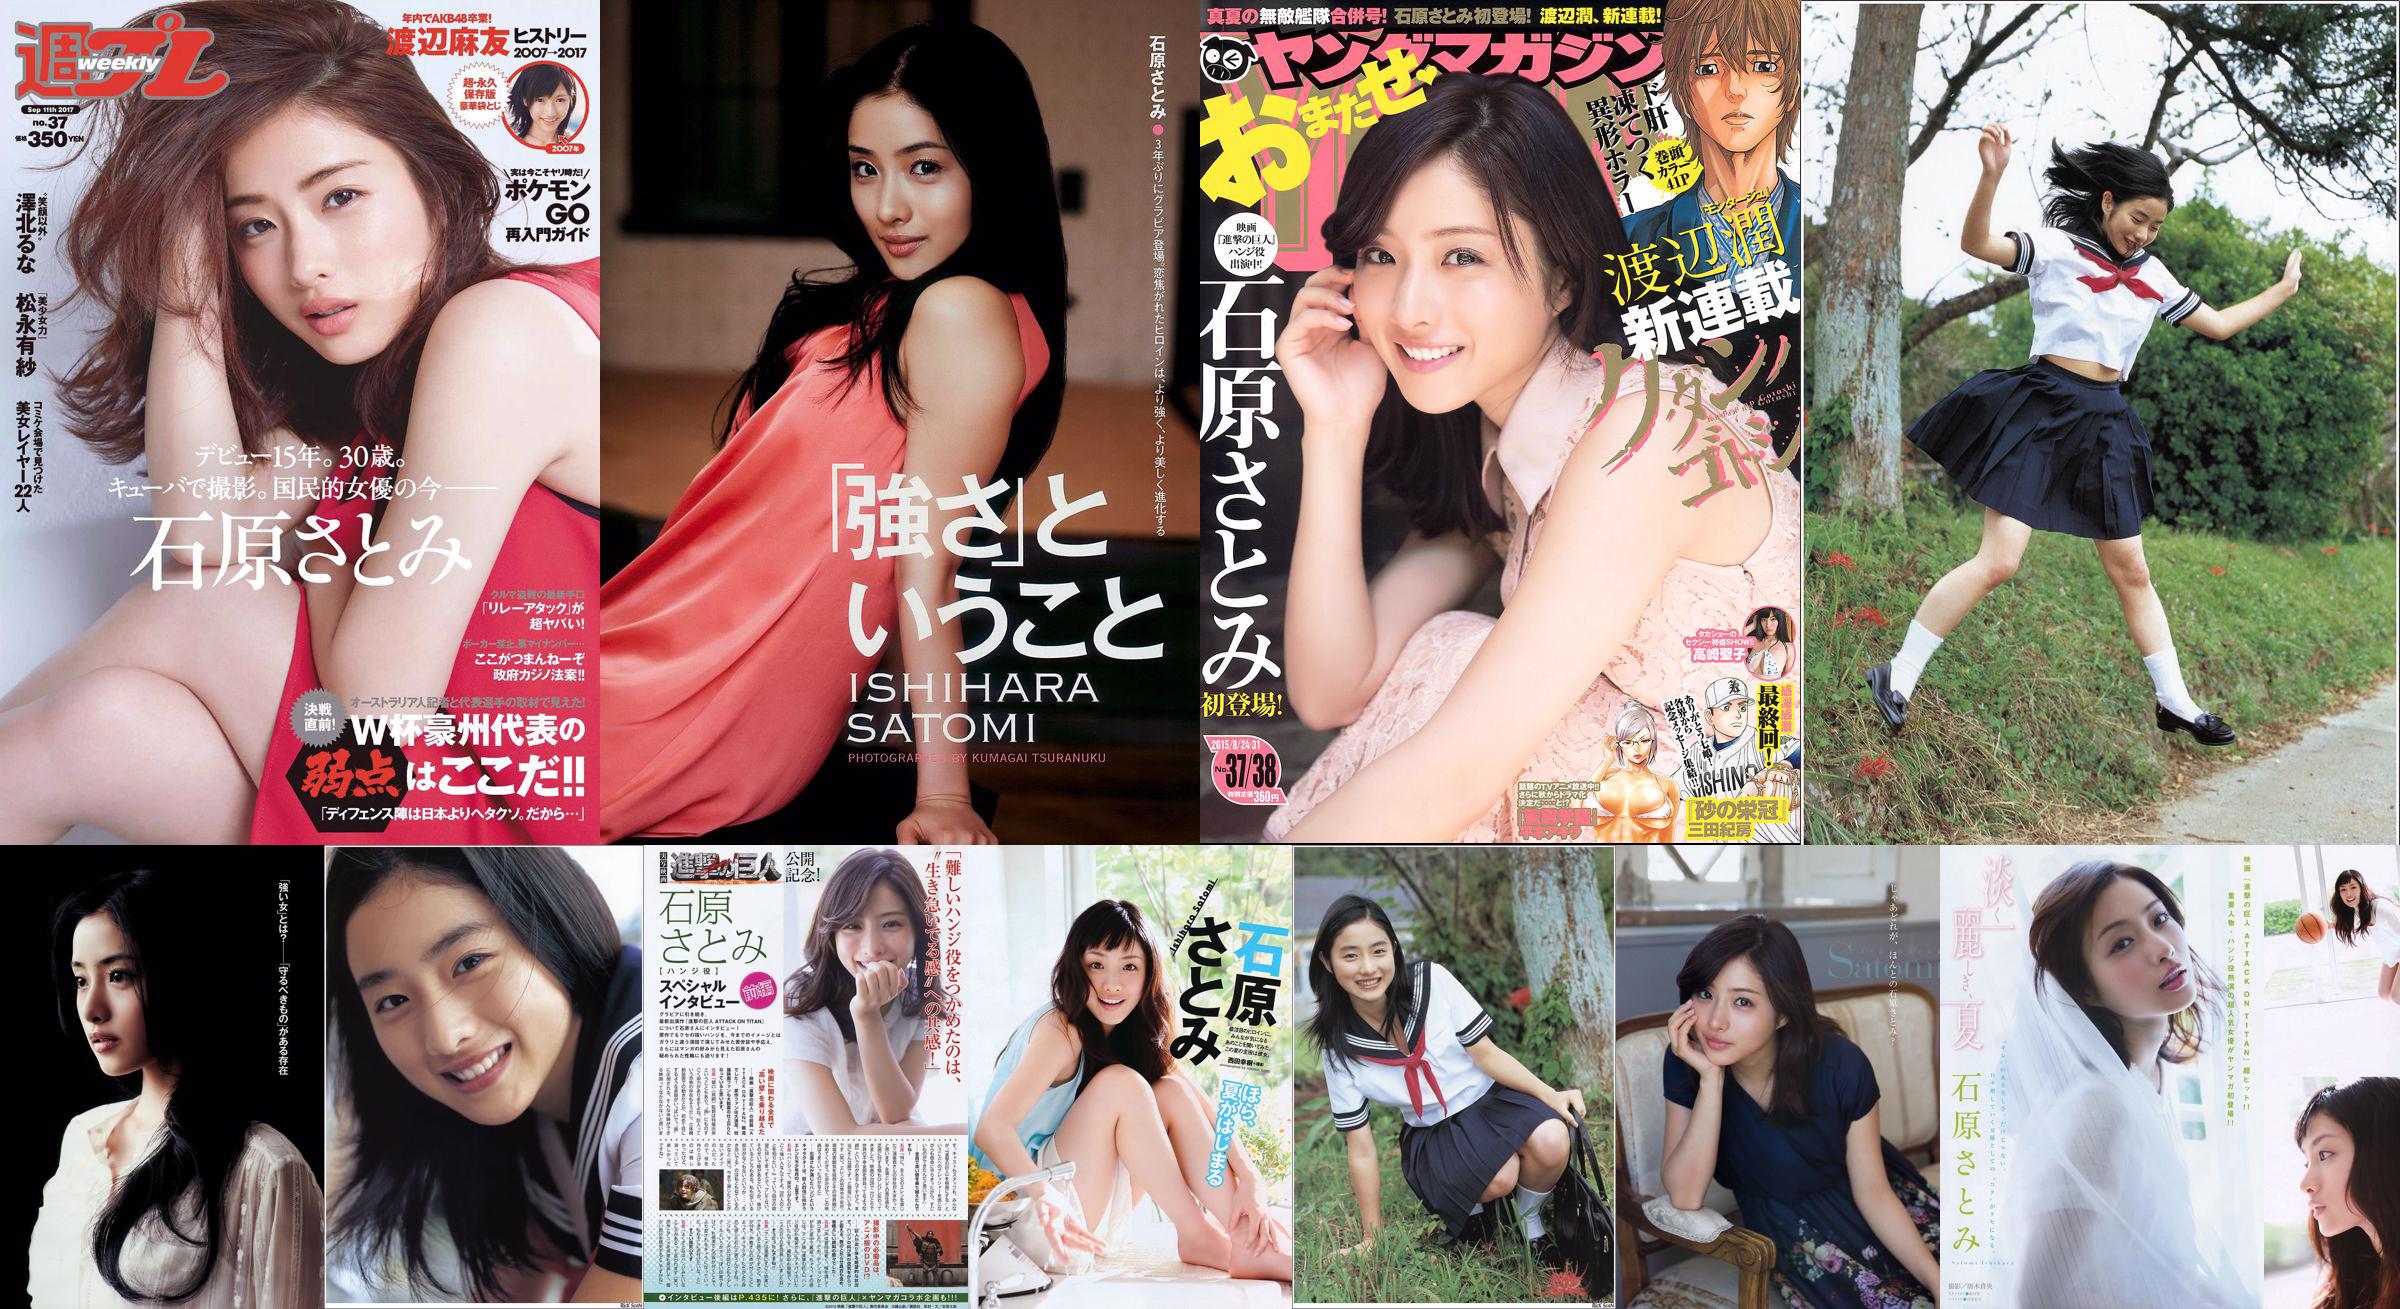 [Young Magazine] Ishihara さとみ Takasaki Seiko 2015 No.37-38 Photo Magazine No.1489b0 Seite 2